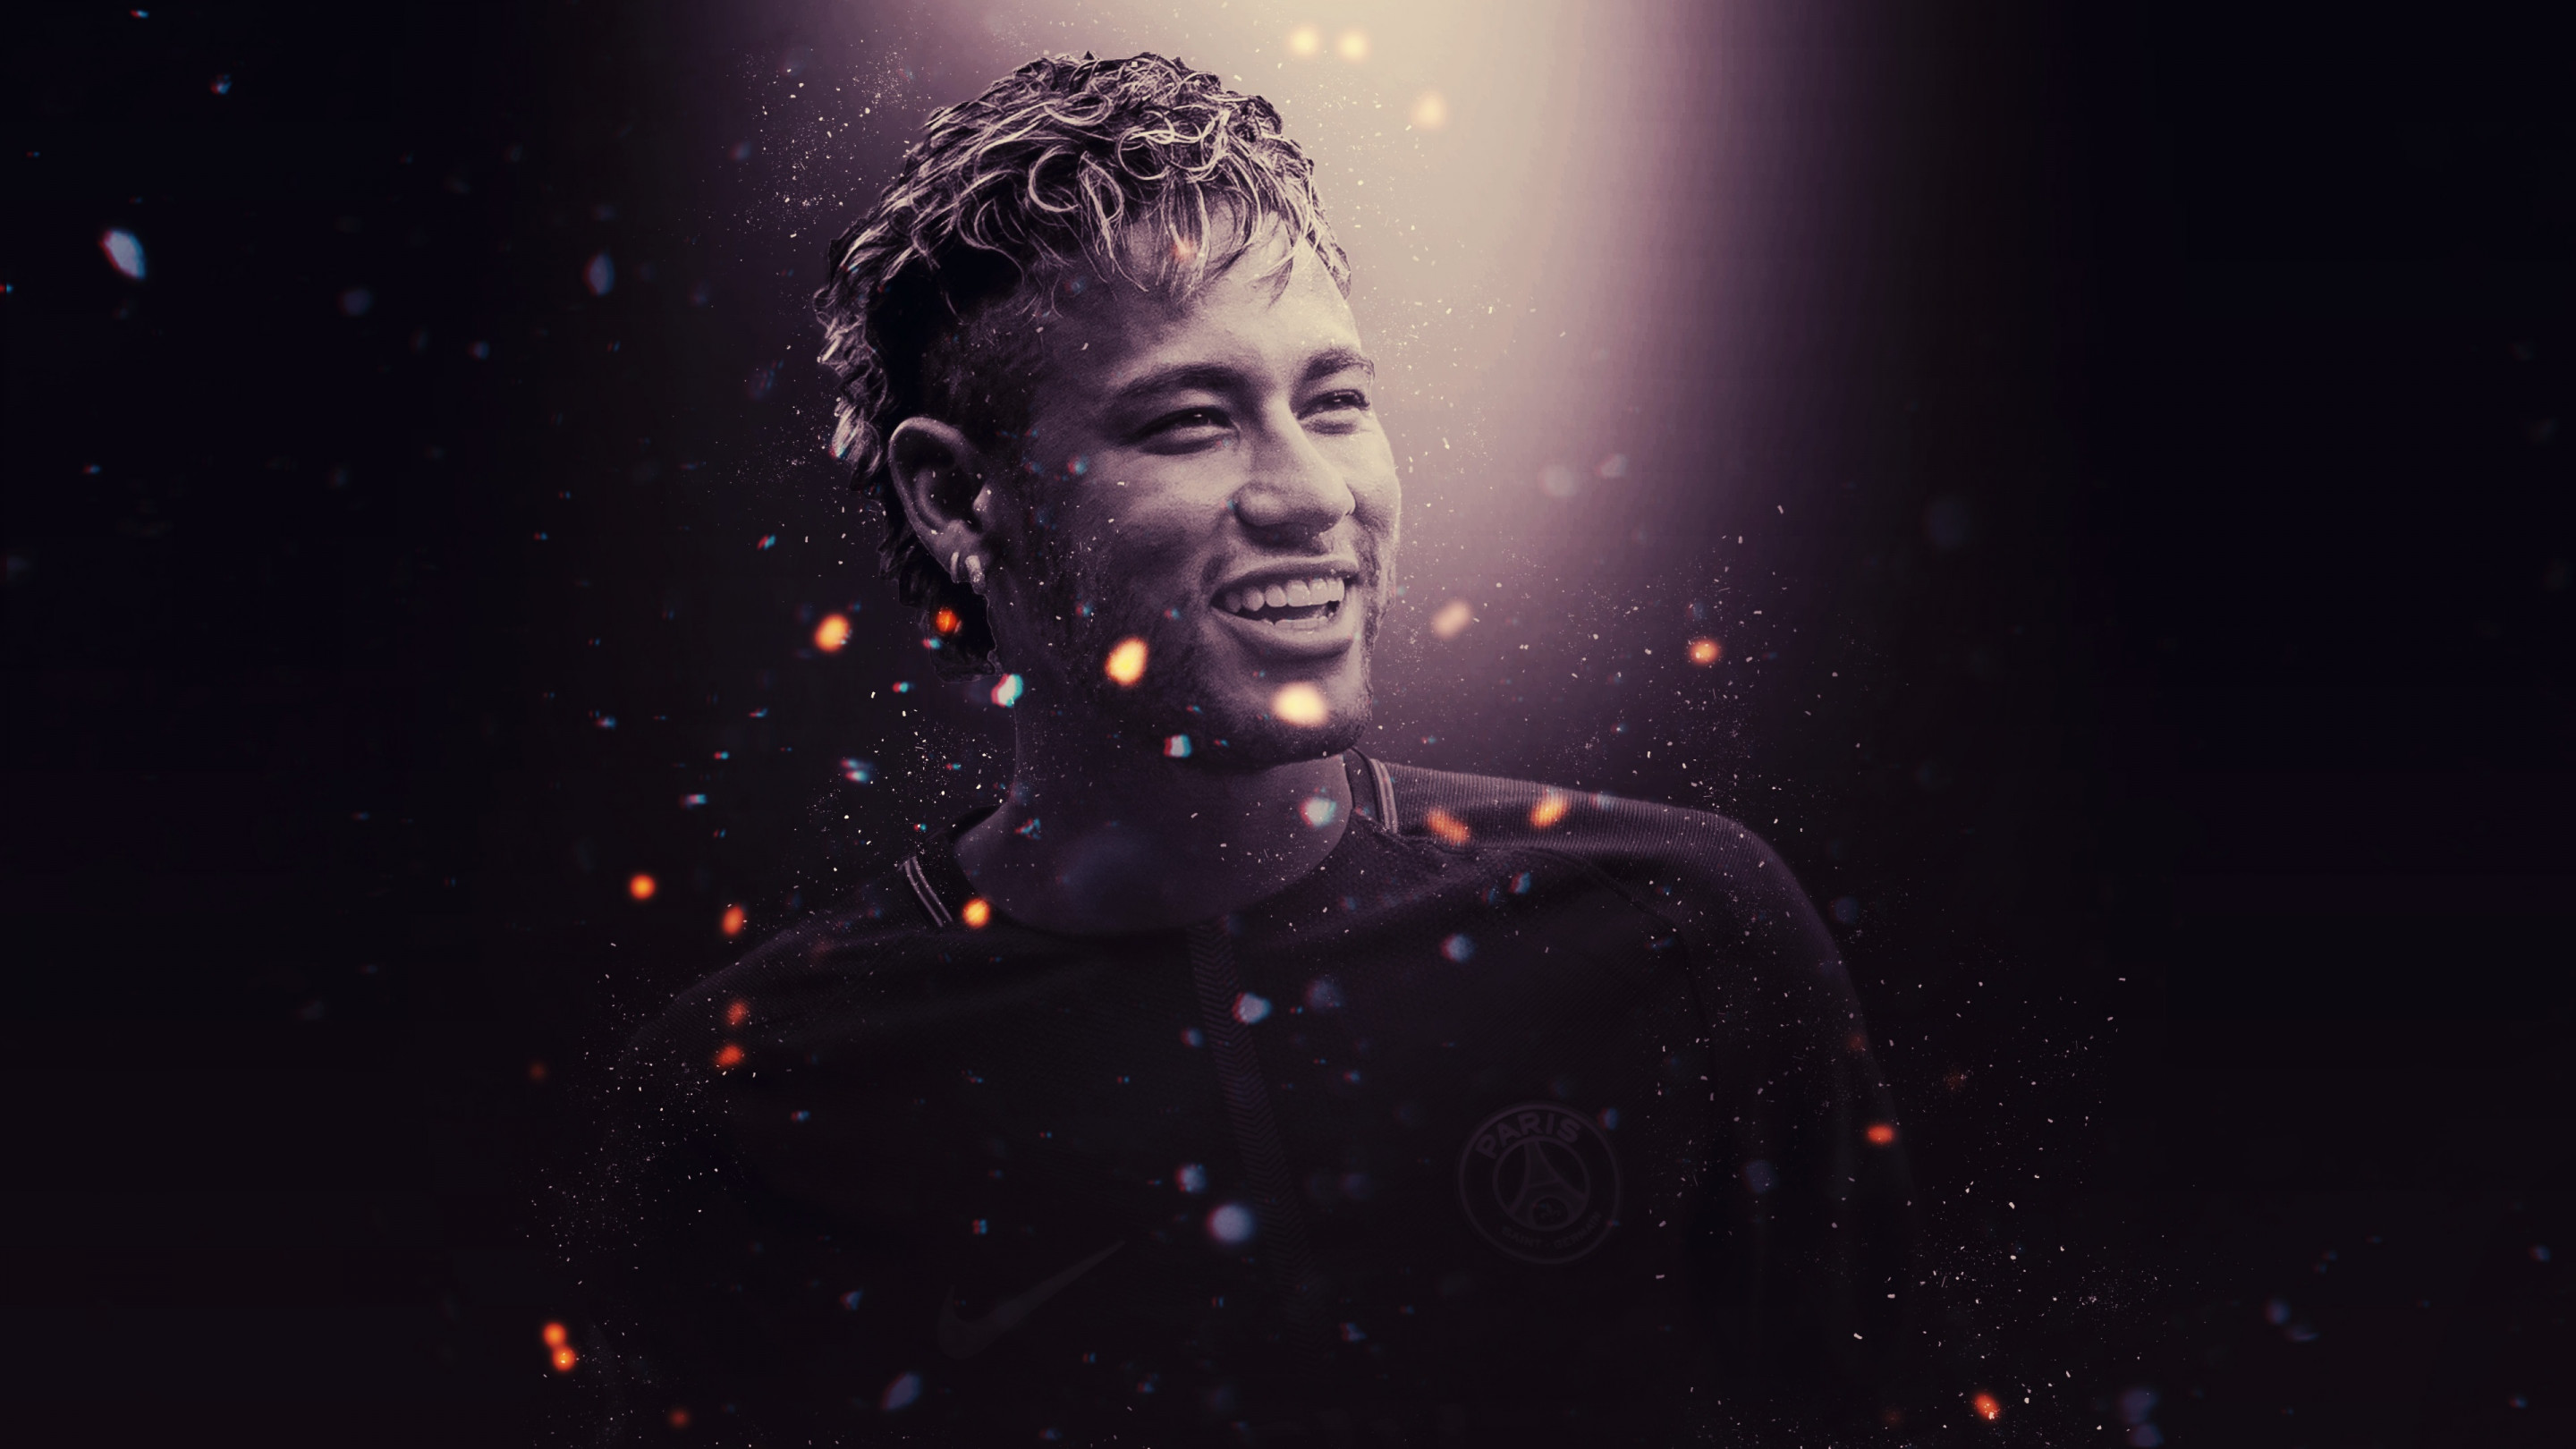 Neymar for PSG wallpaper 2880x1620